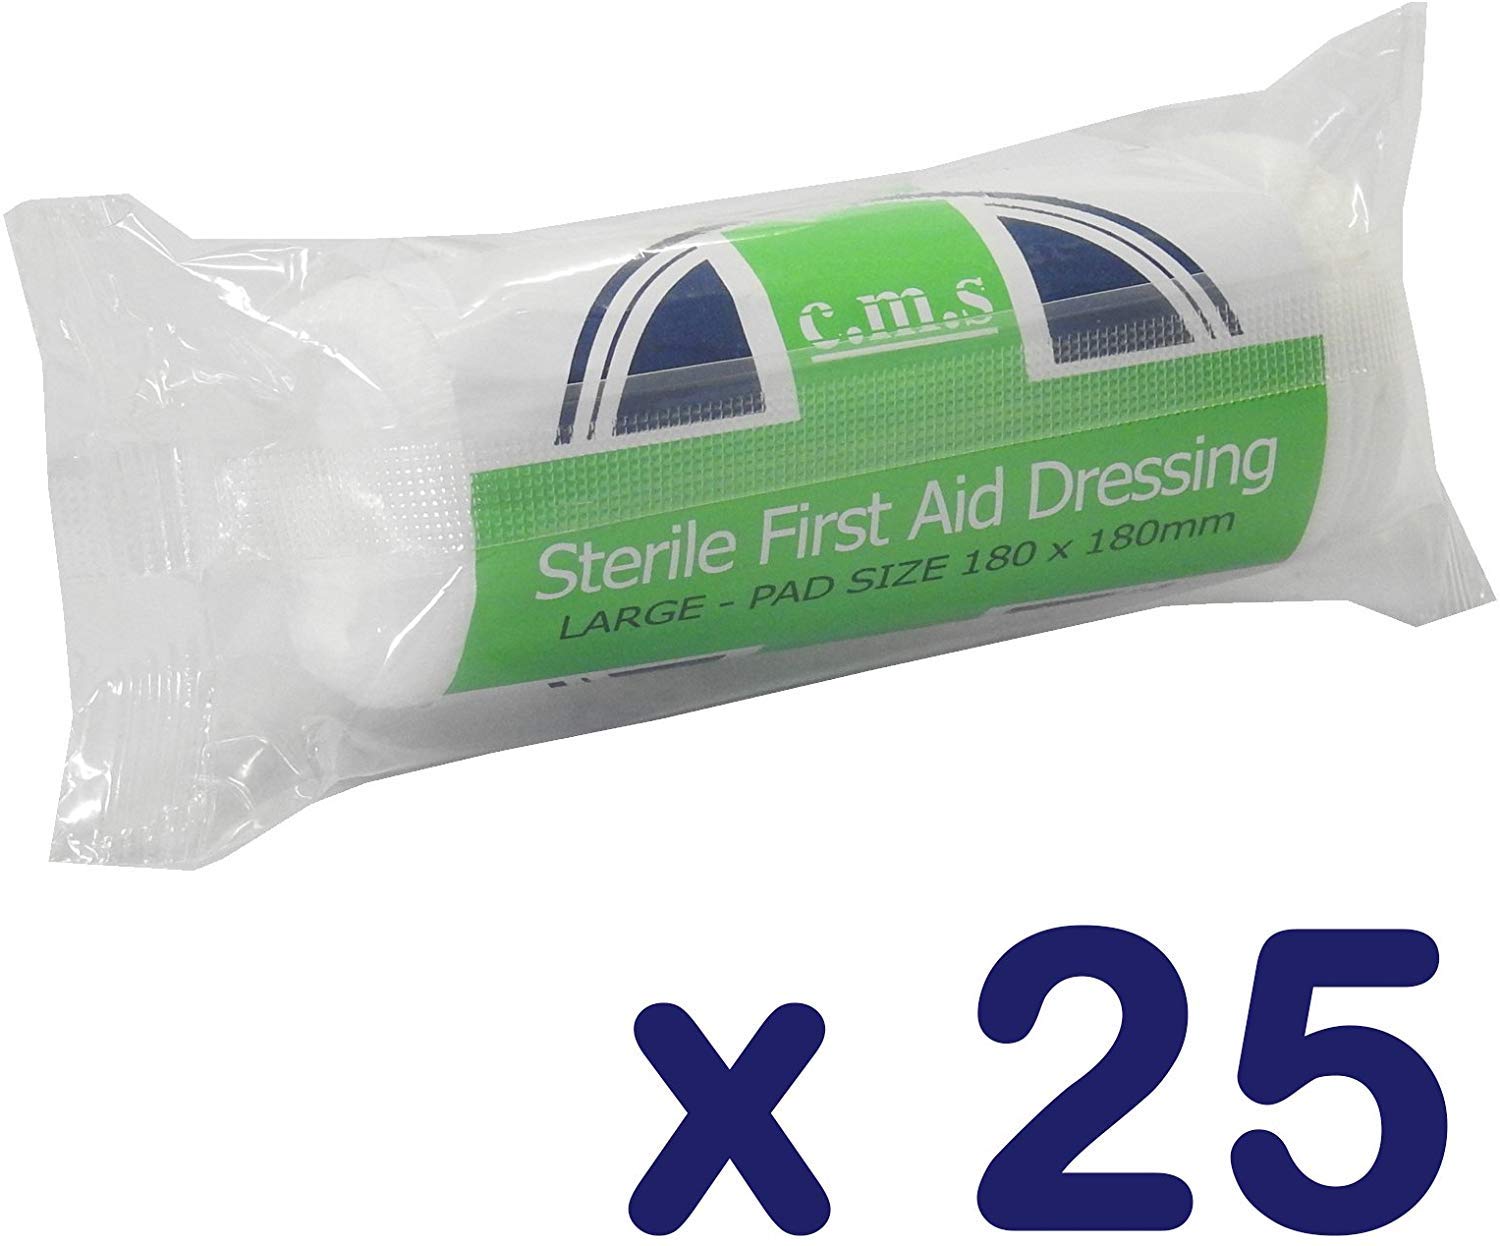 c.m.s Medical First Aid große HSE steril 18 x 18 cm Wundauflage Verbände X 25